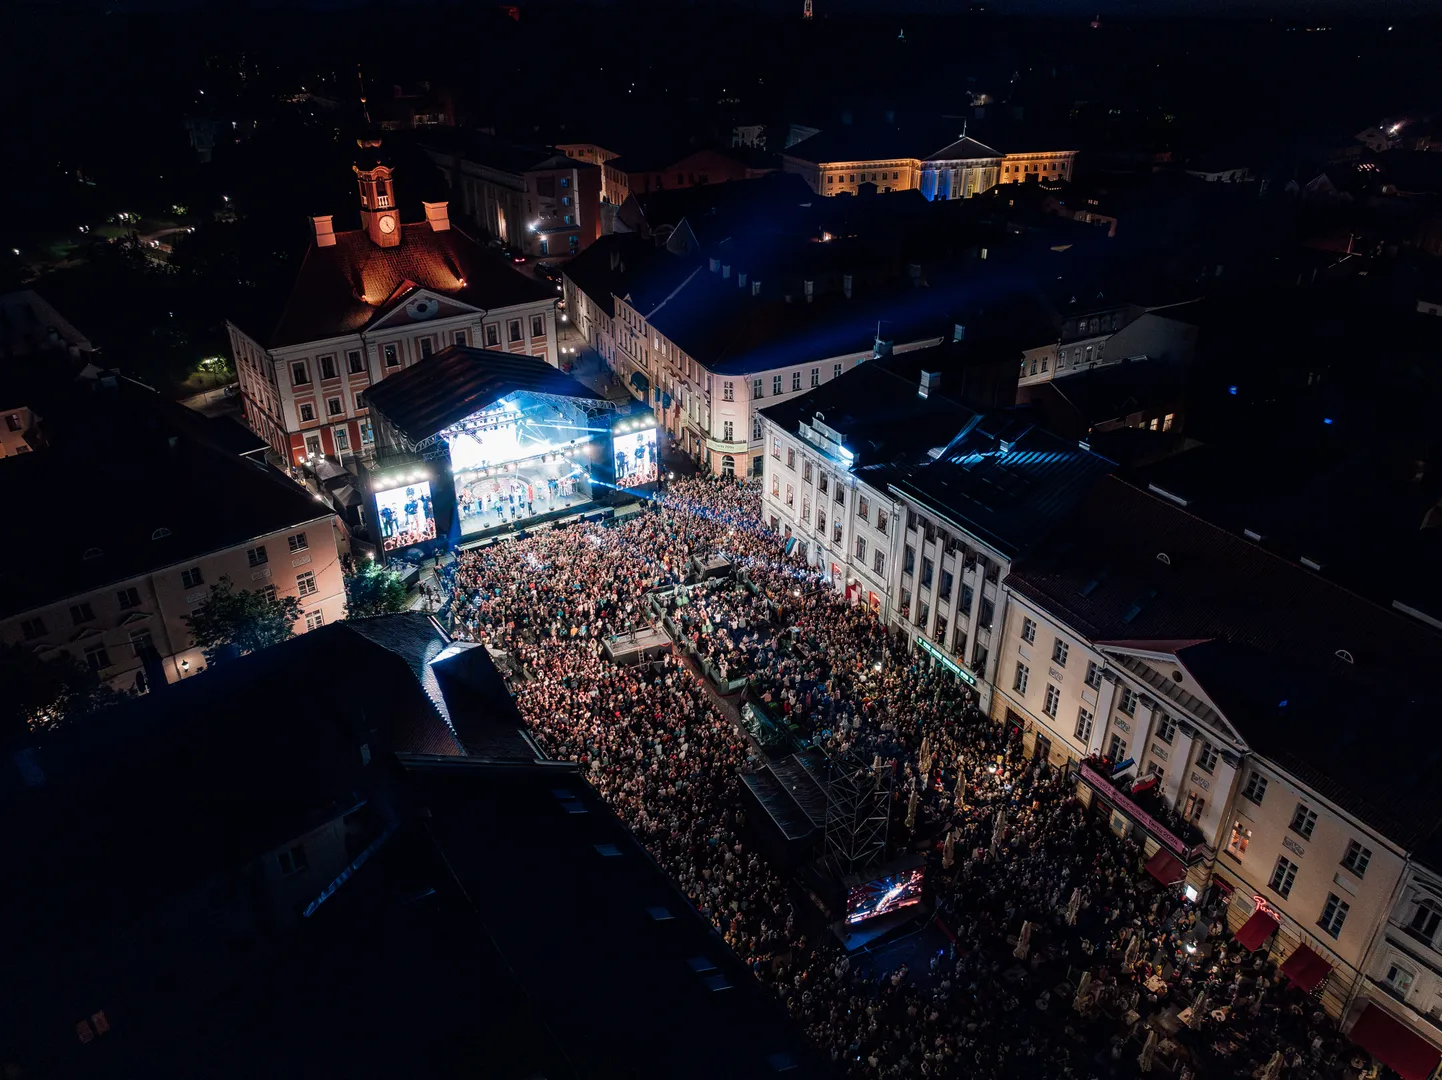 Согласно мобильным данным, в разгар концерта на Ратушной площади и вокруг нее находилось более 10 000 человек.